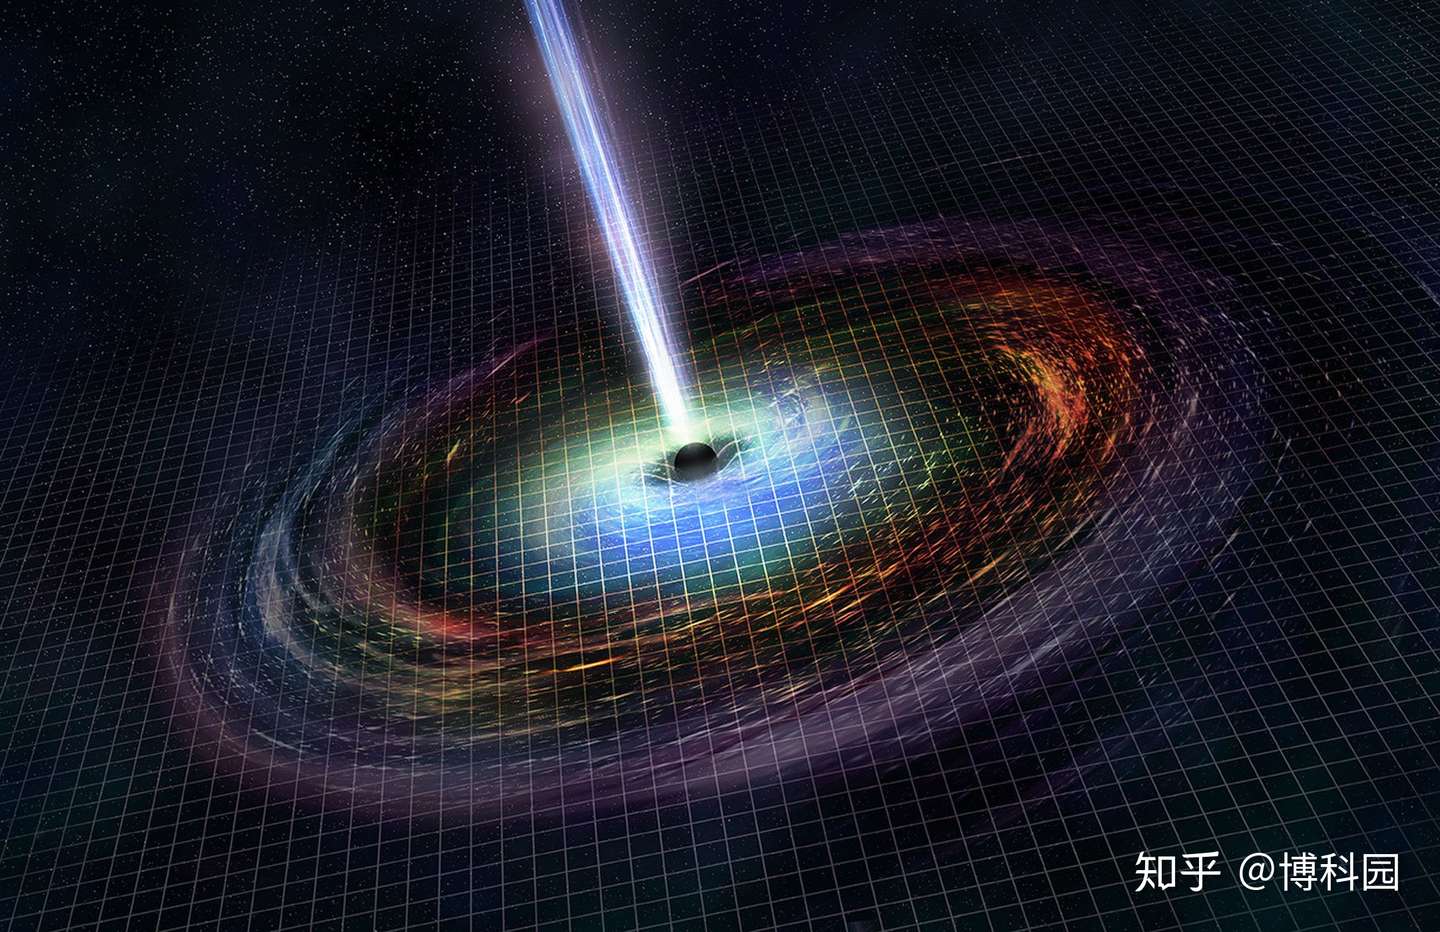 中子星碰撞是否会产生黑洞 中子星和黑洞都是宇宙中最神秘的天体 知乎